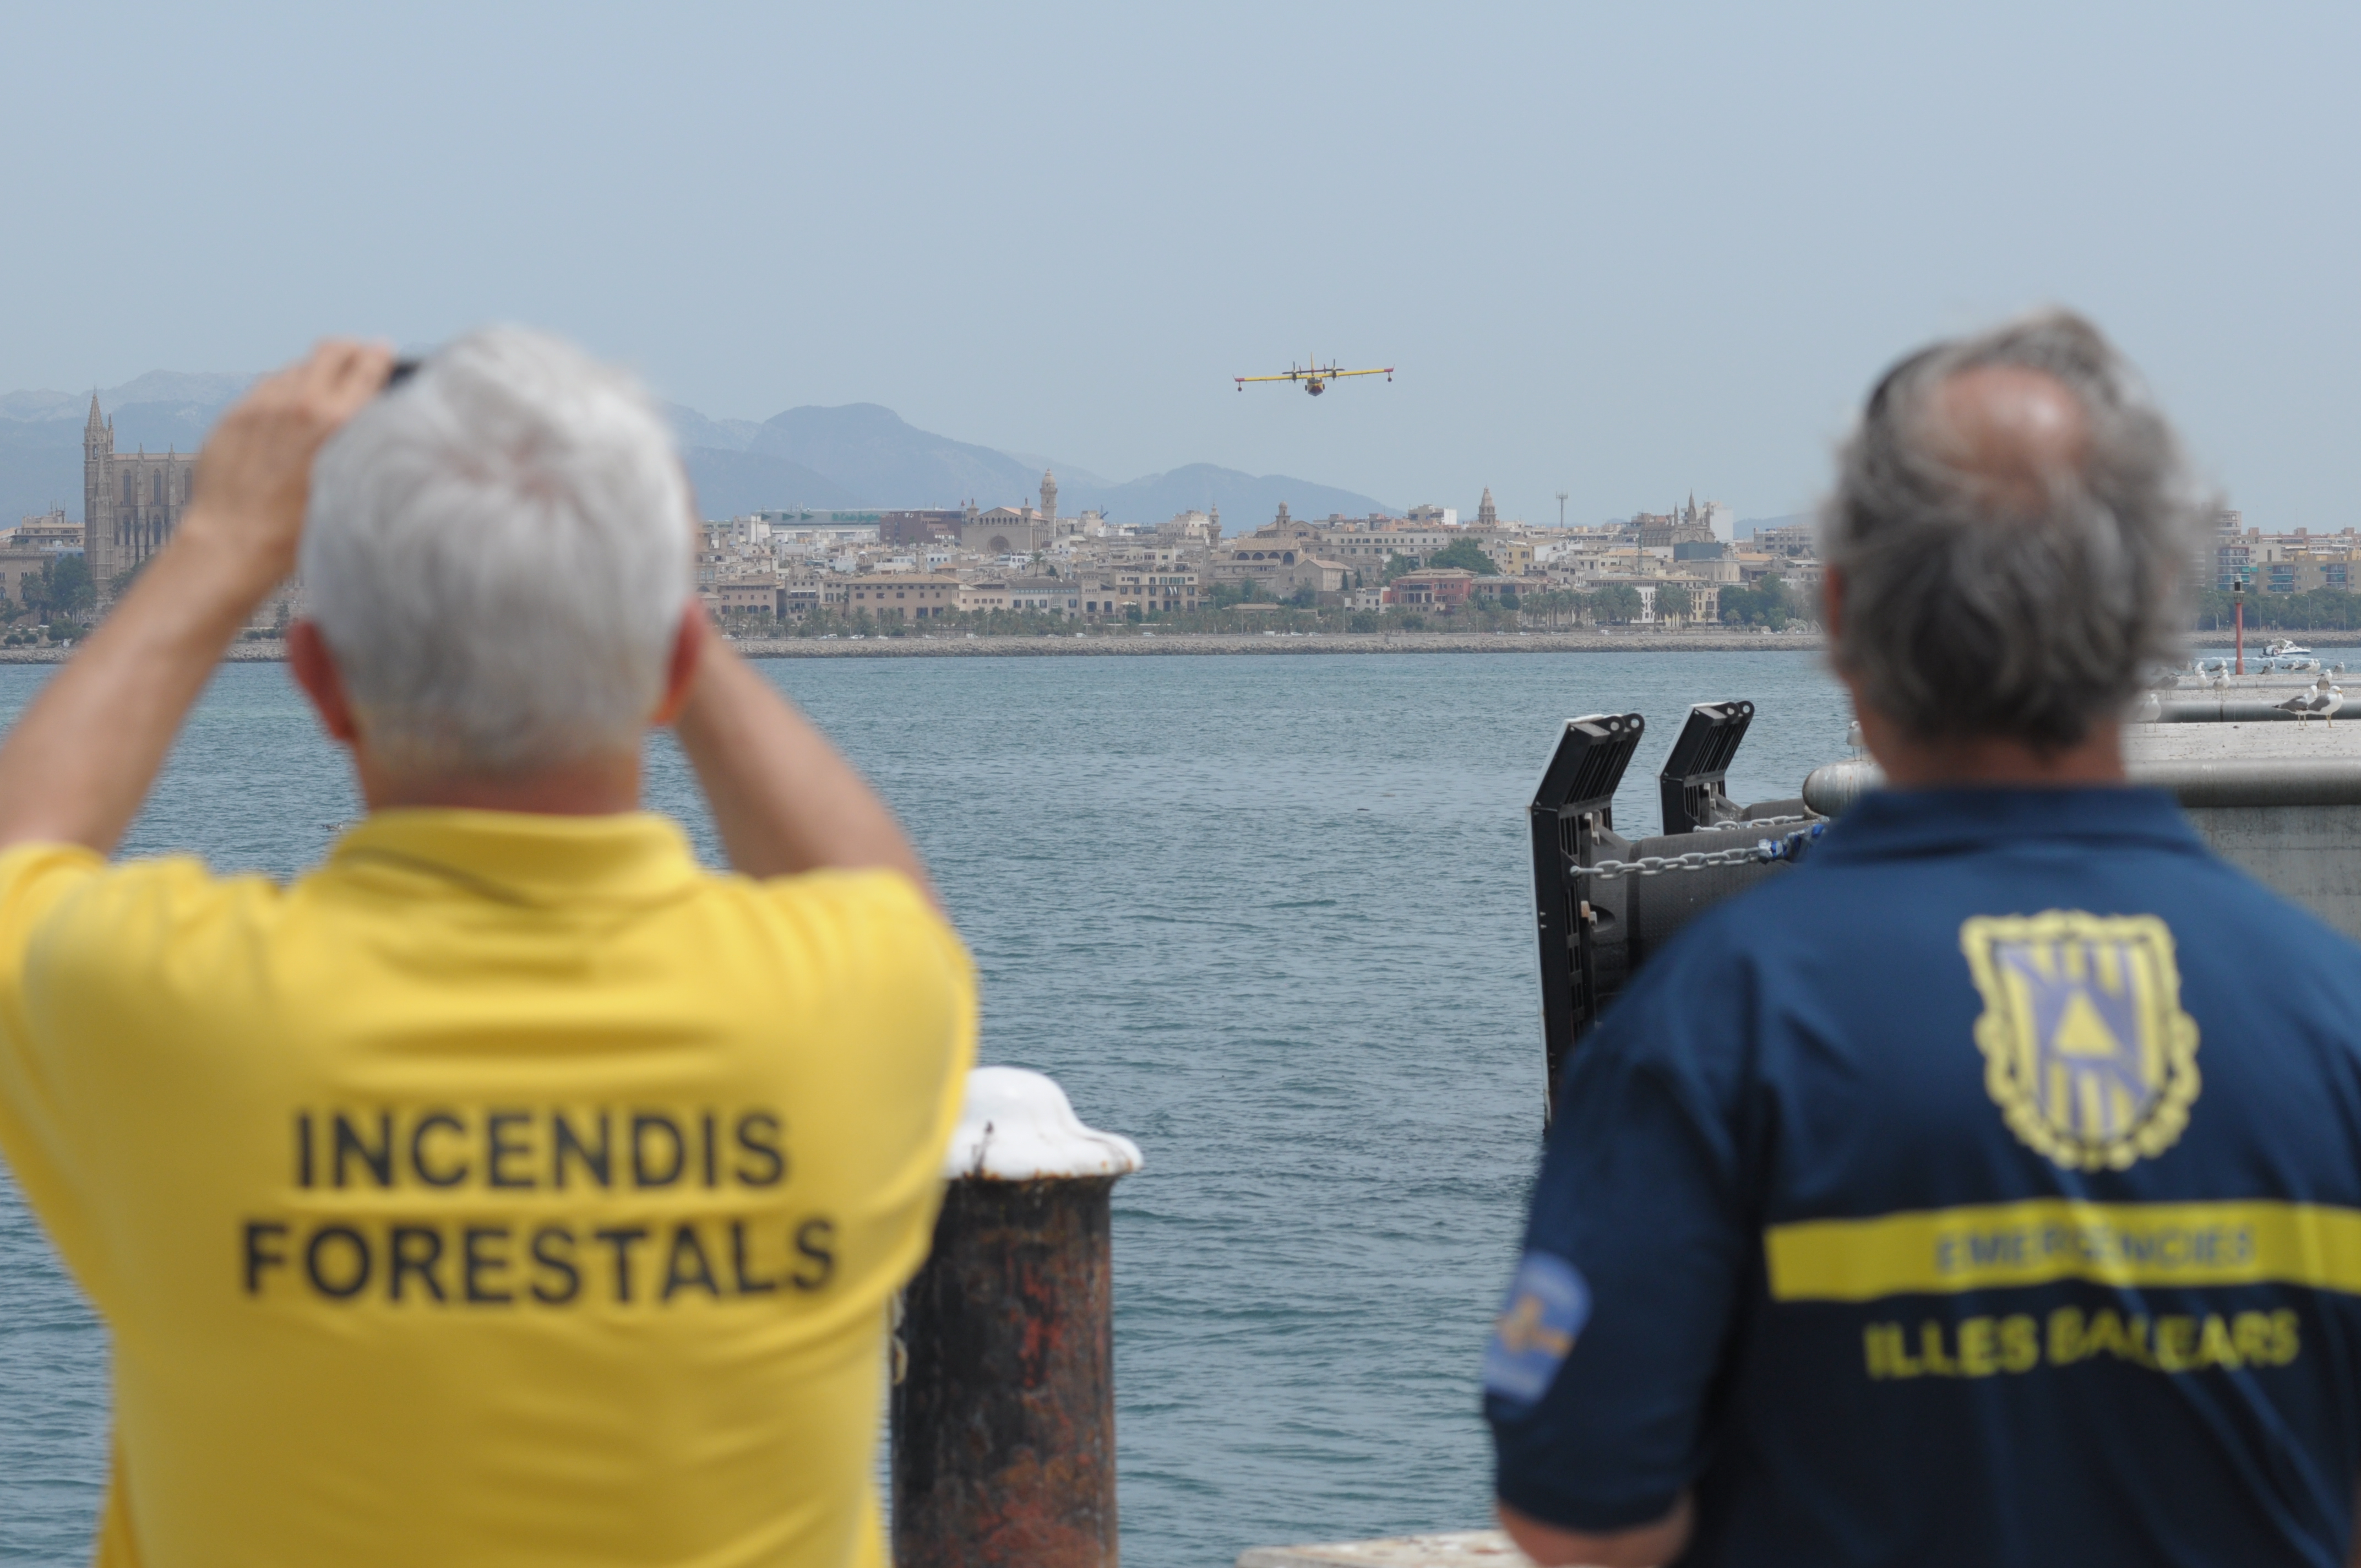 An amphibious aeroplane landing exercise undertaken at the Port of Palma